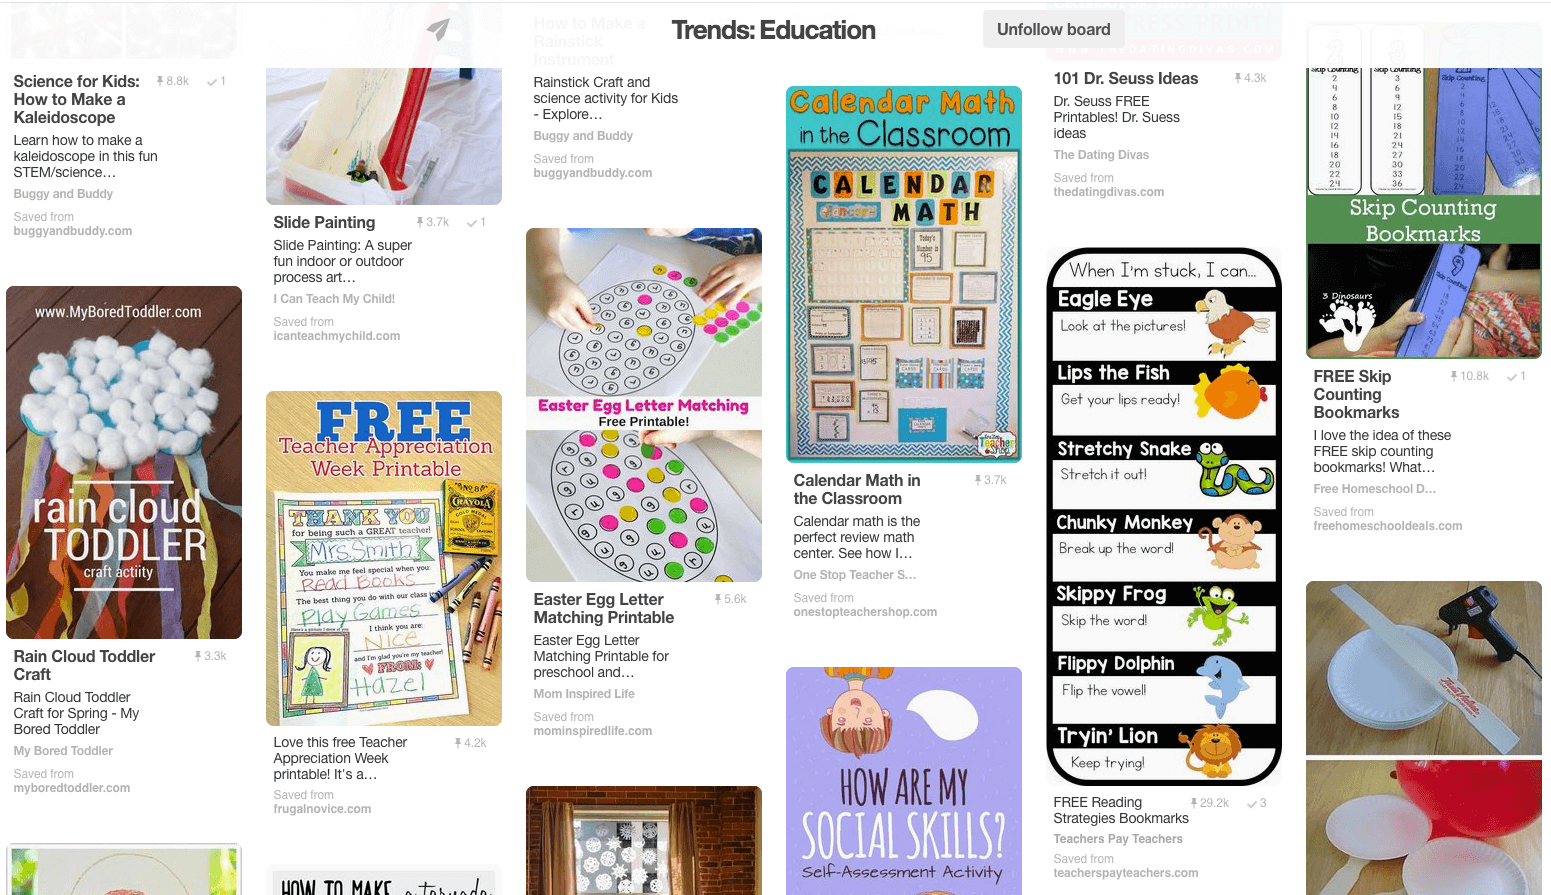 February Education Trends on Pinterest